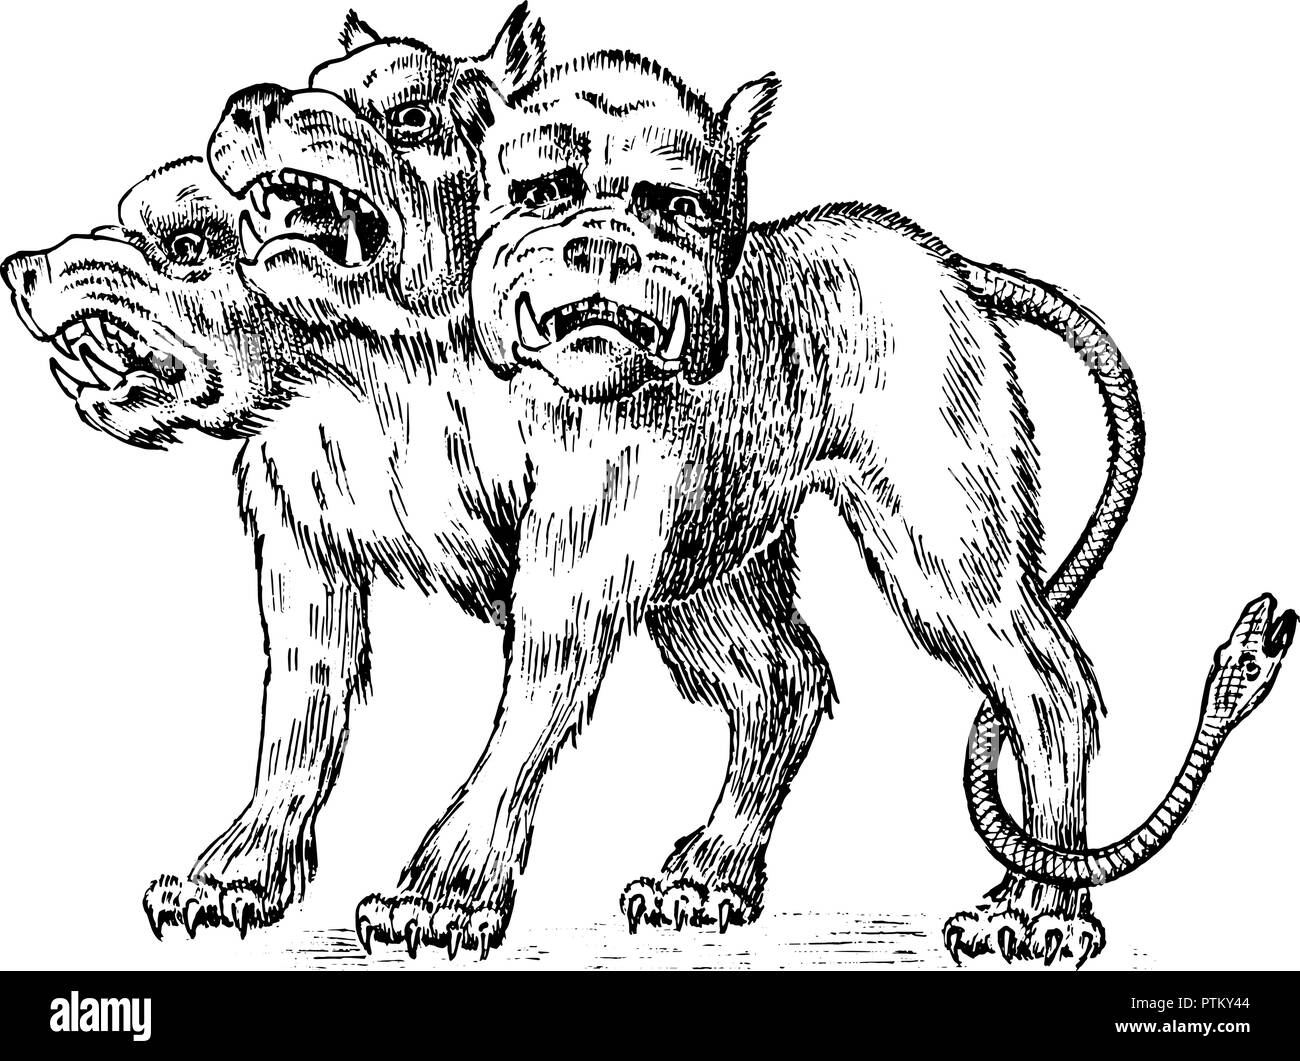 Cerberus dreiköpfige Hund. Mythische griechische antike Monster. Mythologisches Tier. Fantastische Kreaturen in der alten Vintage Style. Graviert Hand gezeichnet Alte Stock Vektor